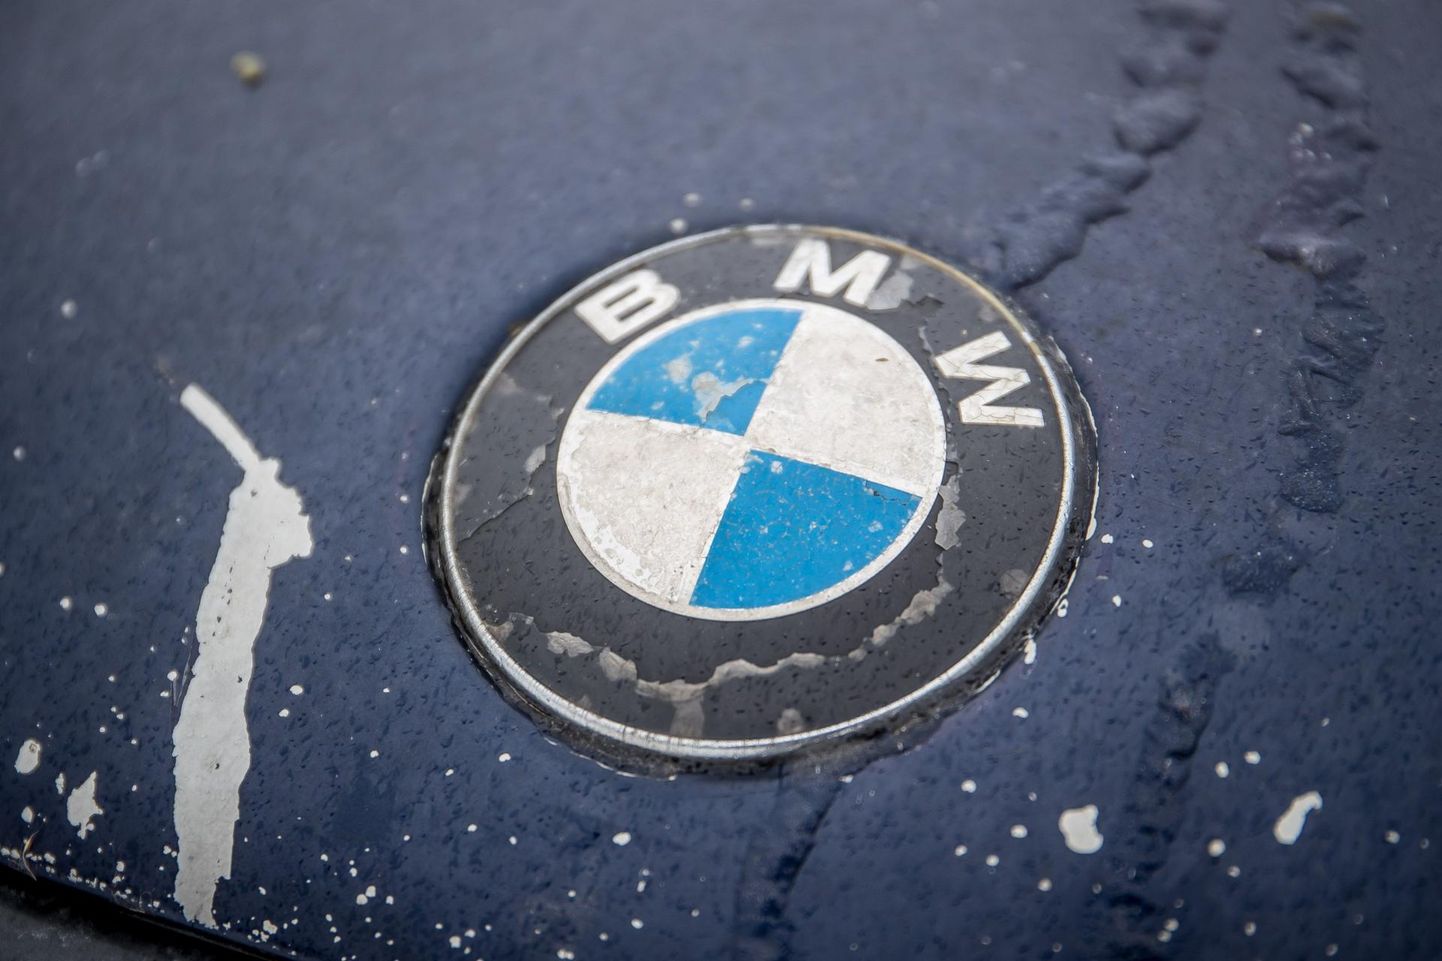 Õnnetuses purunesid nii BMW kui teepiire. Foto on illustratiivne.